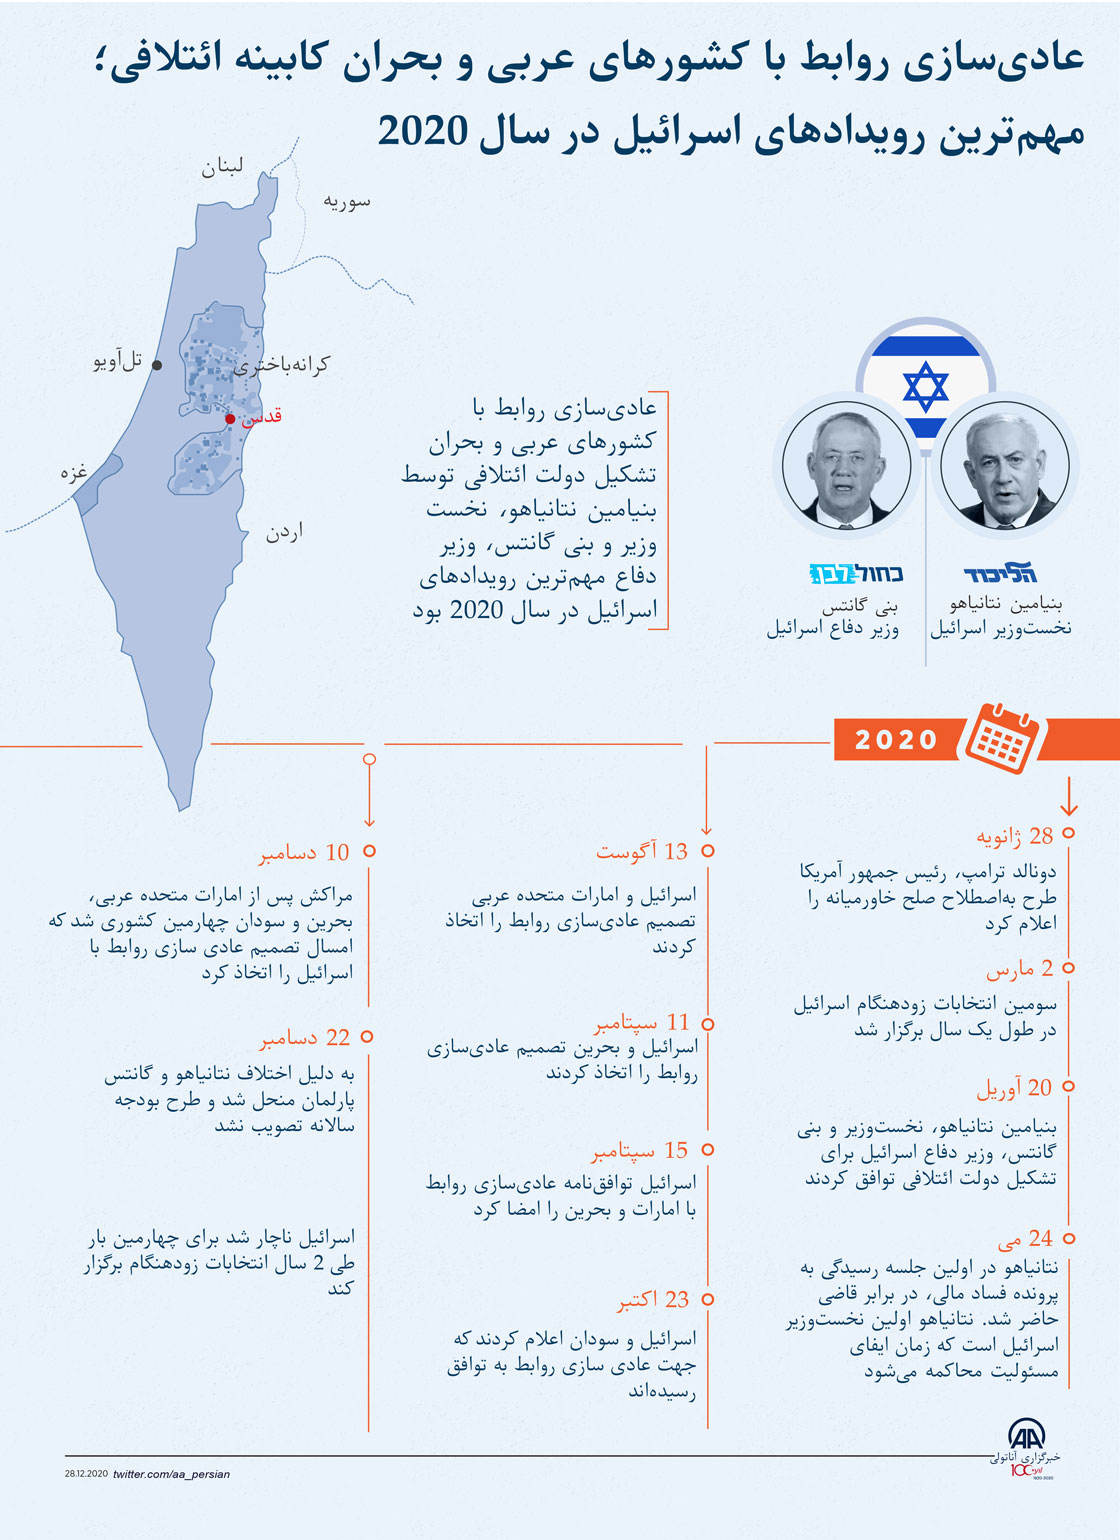  عادی‌سازی روابط با کشورهای عربی و بحران کابینه ائتلافی؛ مهم‌ترین رویدادهای اسرائیل در سال 2020